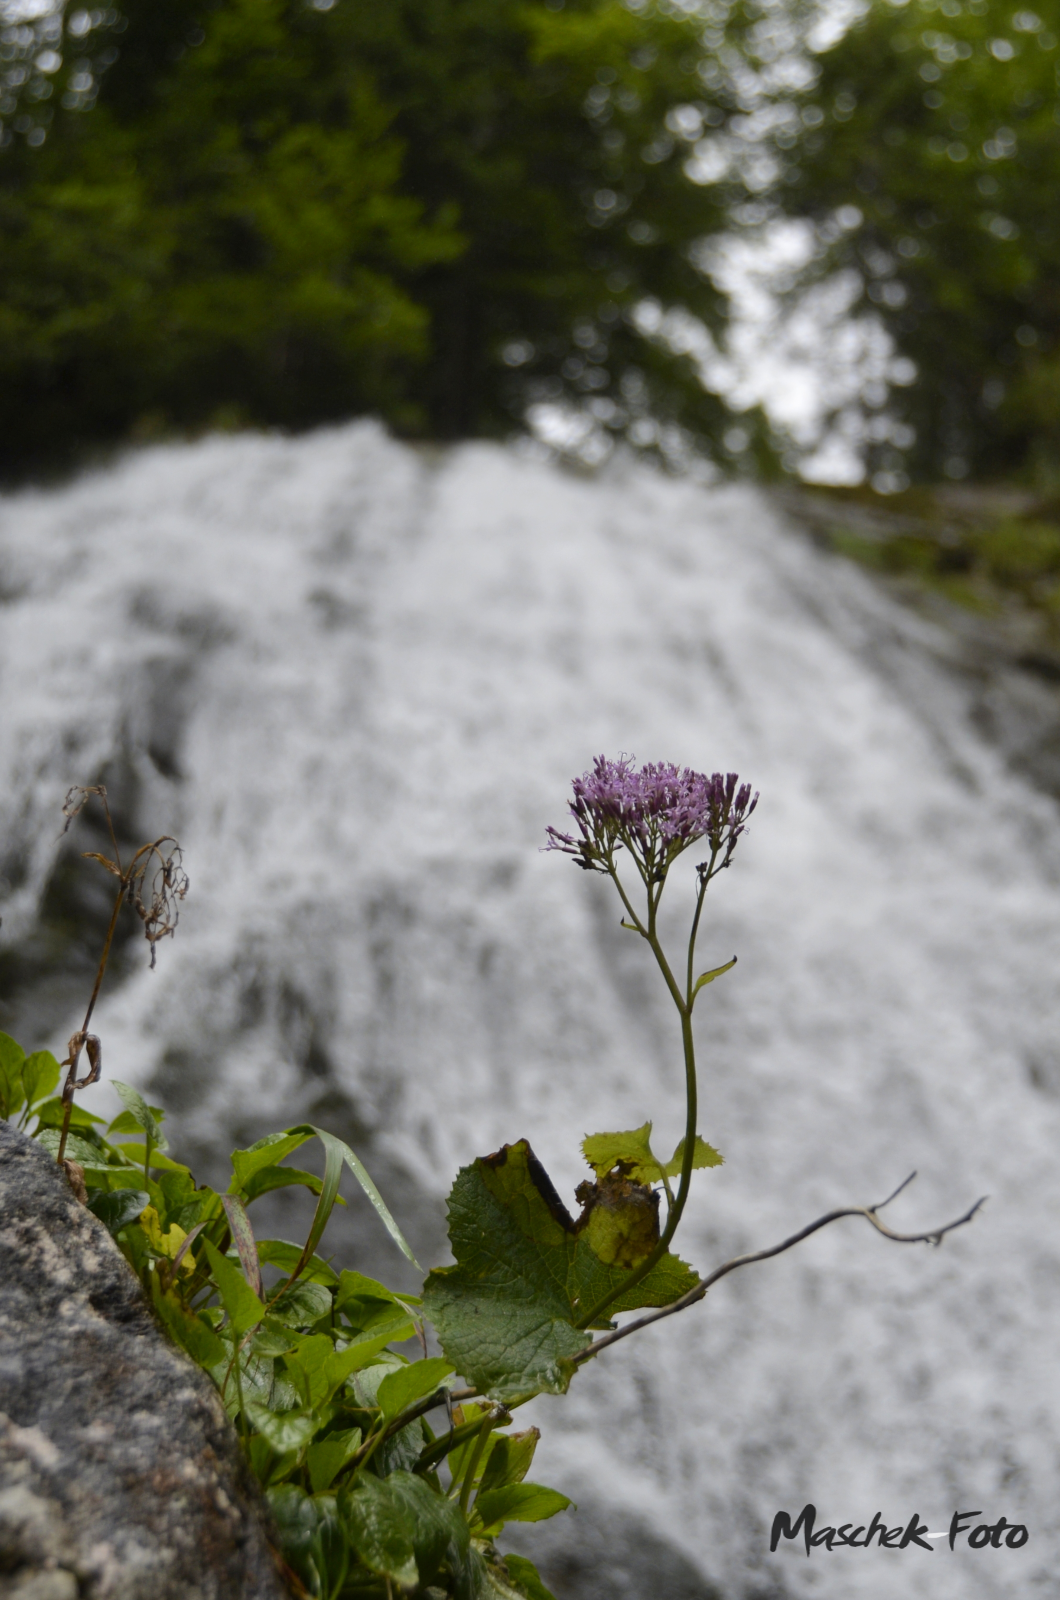 Blume mit Wasserfall im Hintergrund